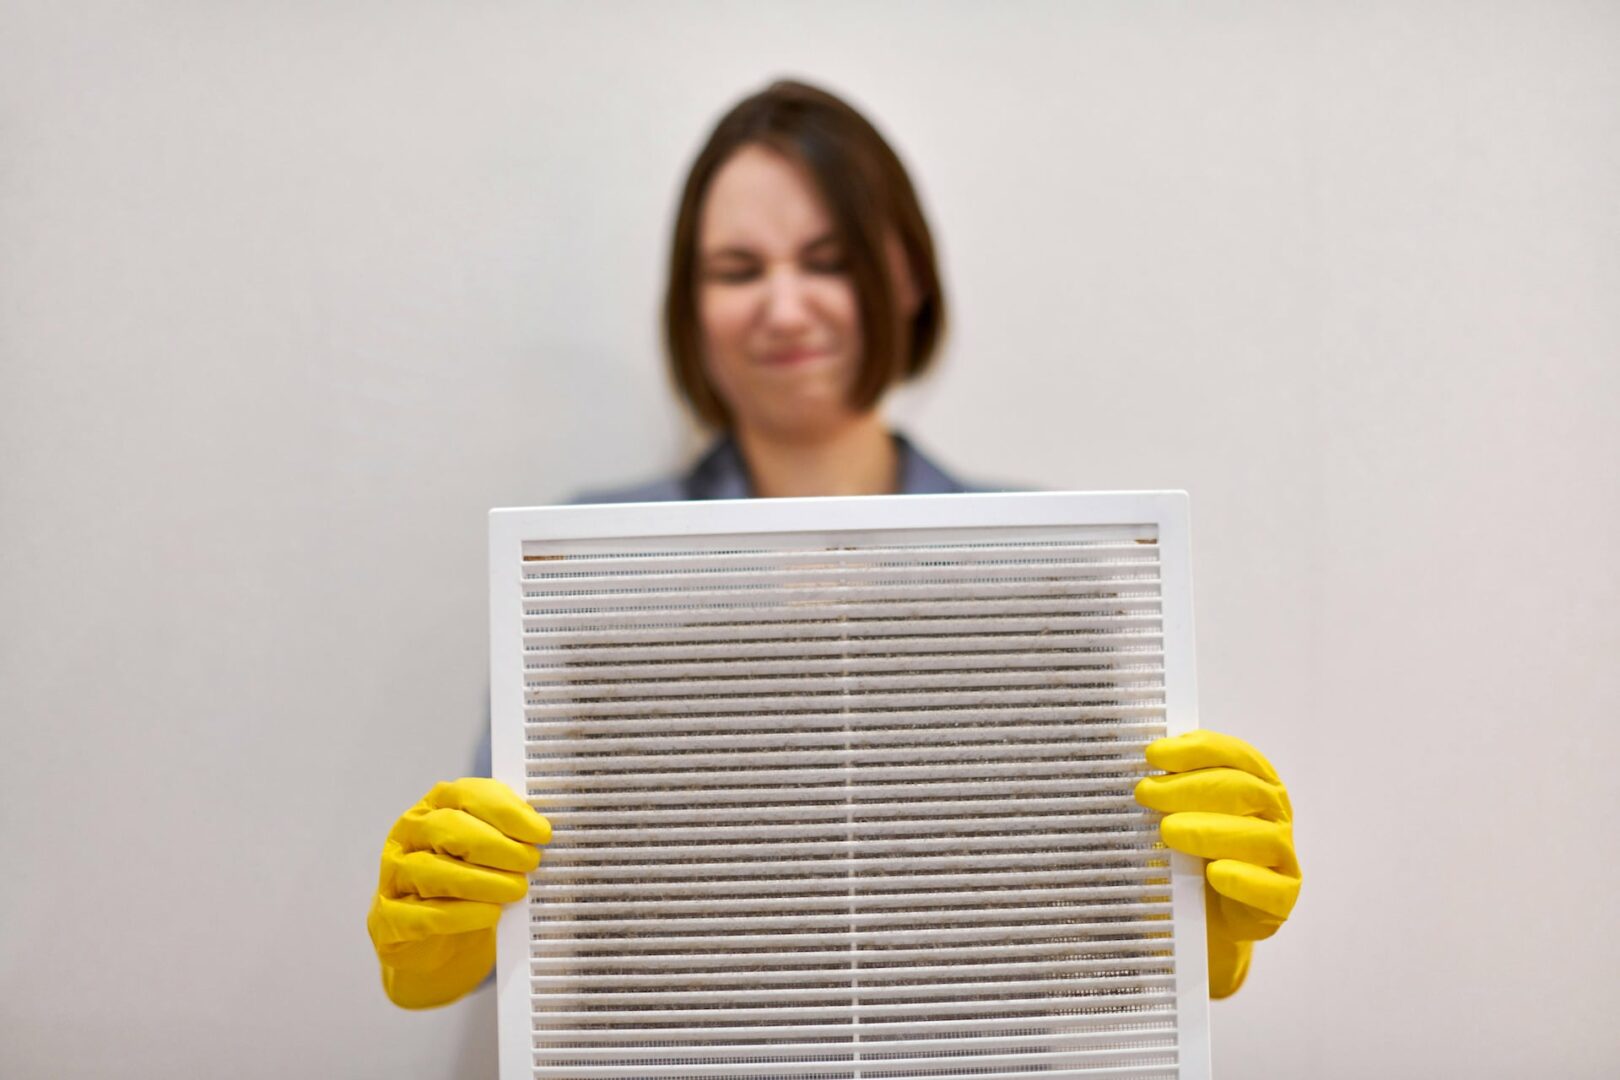 Onderhoud van ventilatietoestellen,
reiniging en desinfectie luchtkanalen
